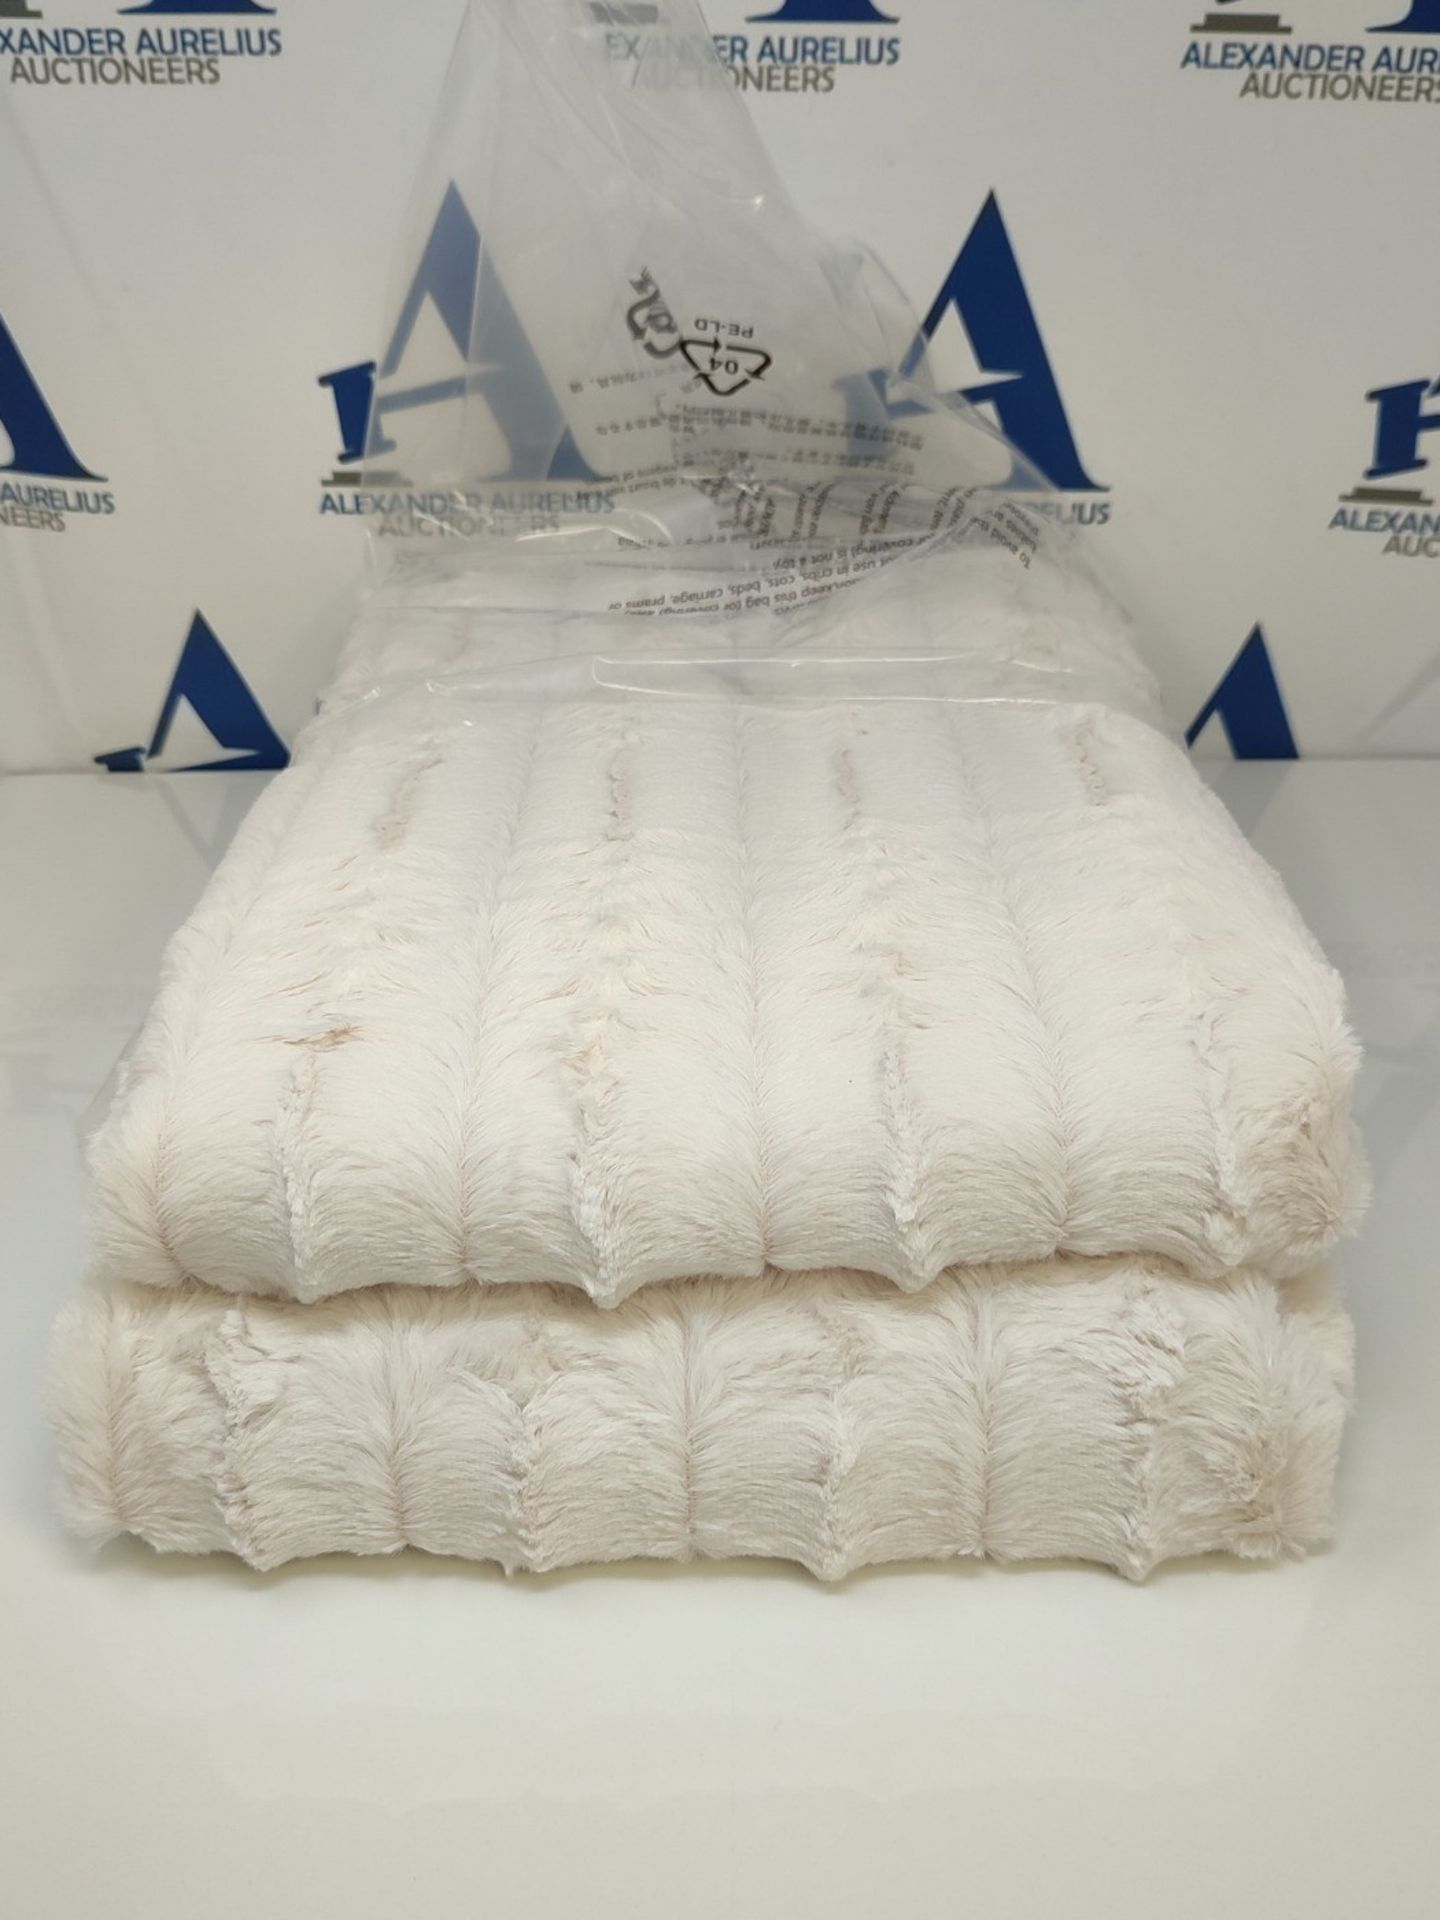 Amazon Basics Faux Fur Throw Blanket - Machine Washable, 150 x 200cm, Ivory - Image 2 of 2